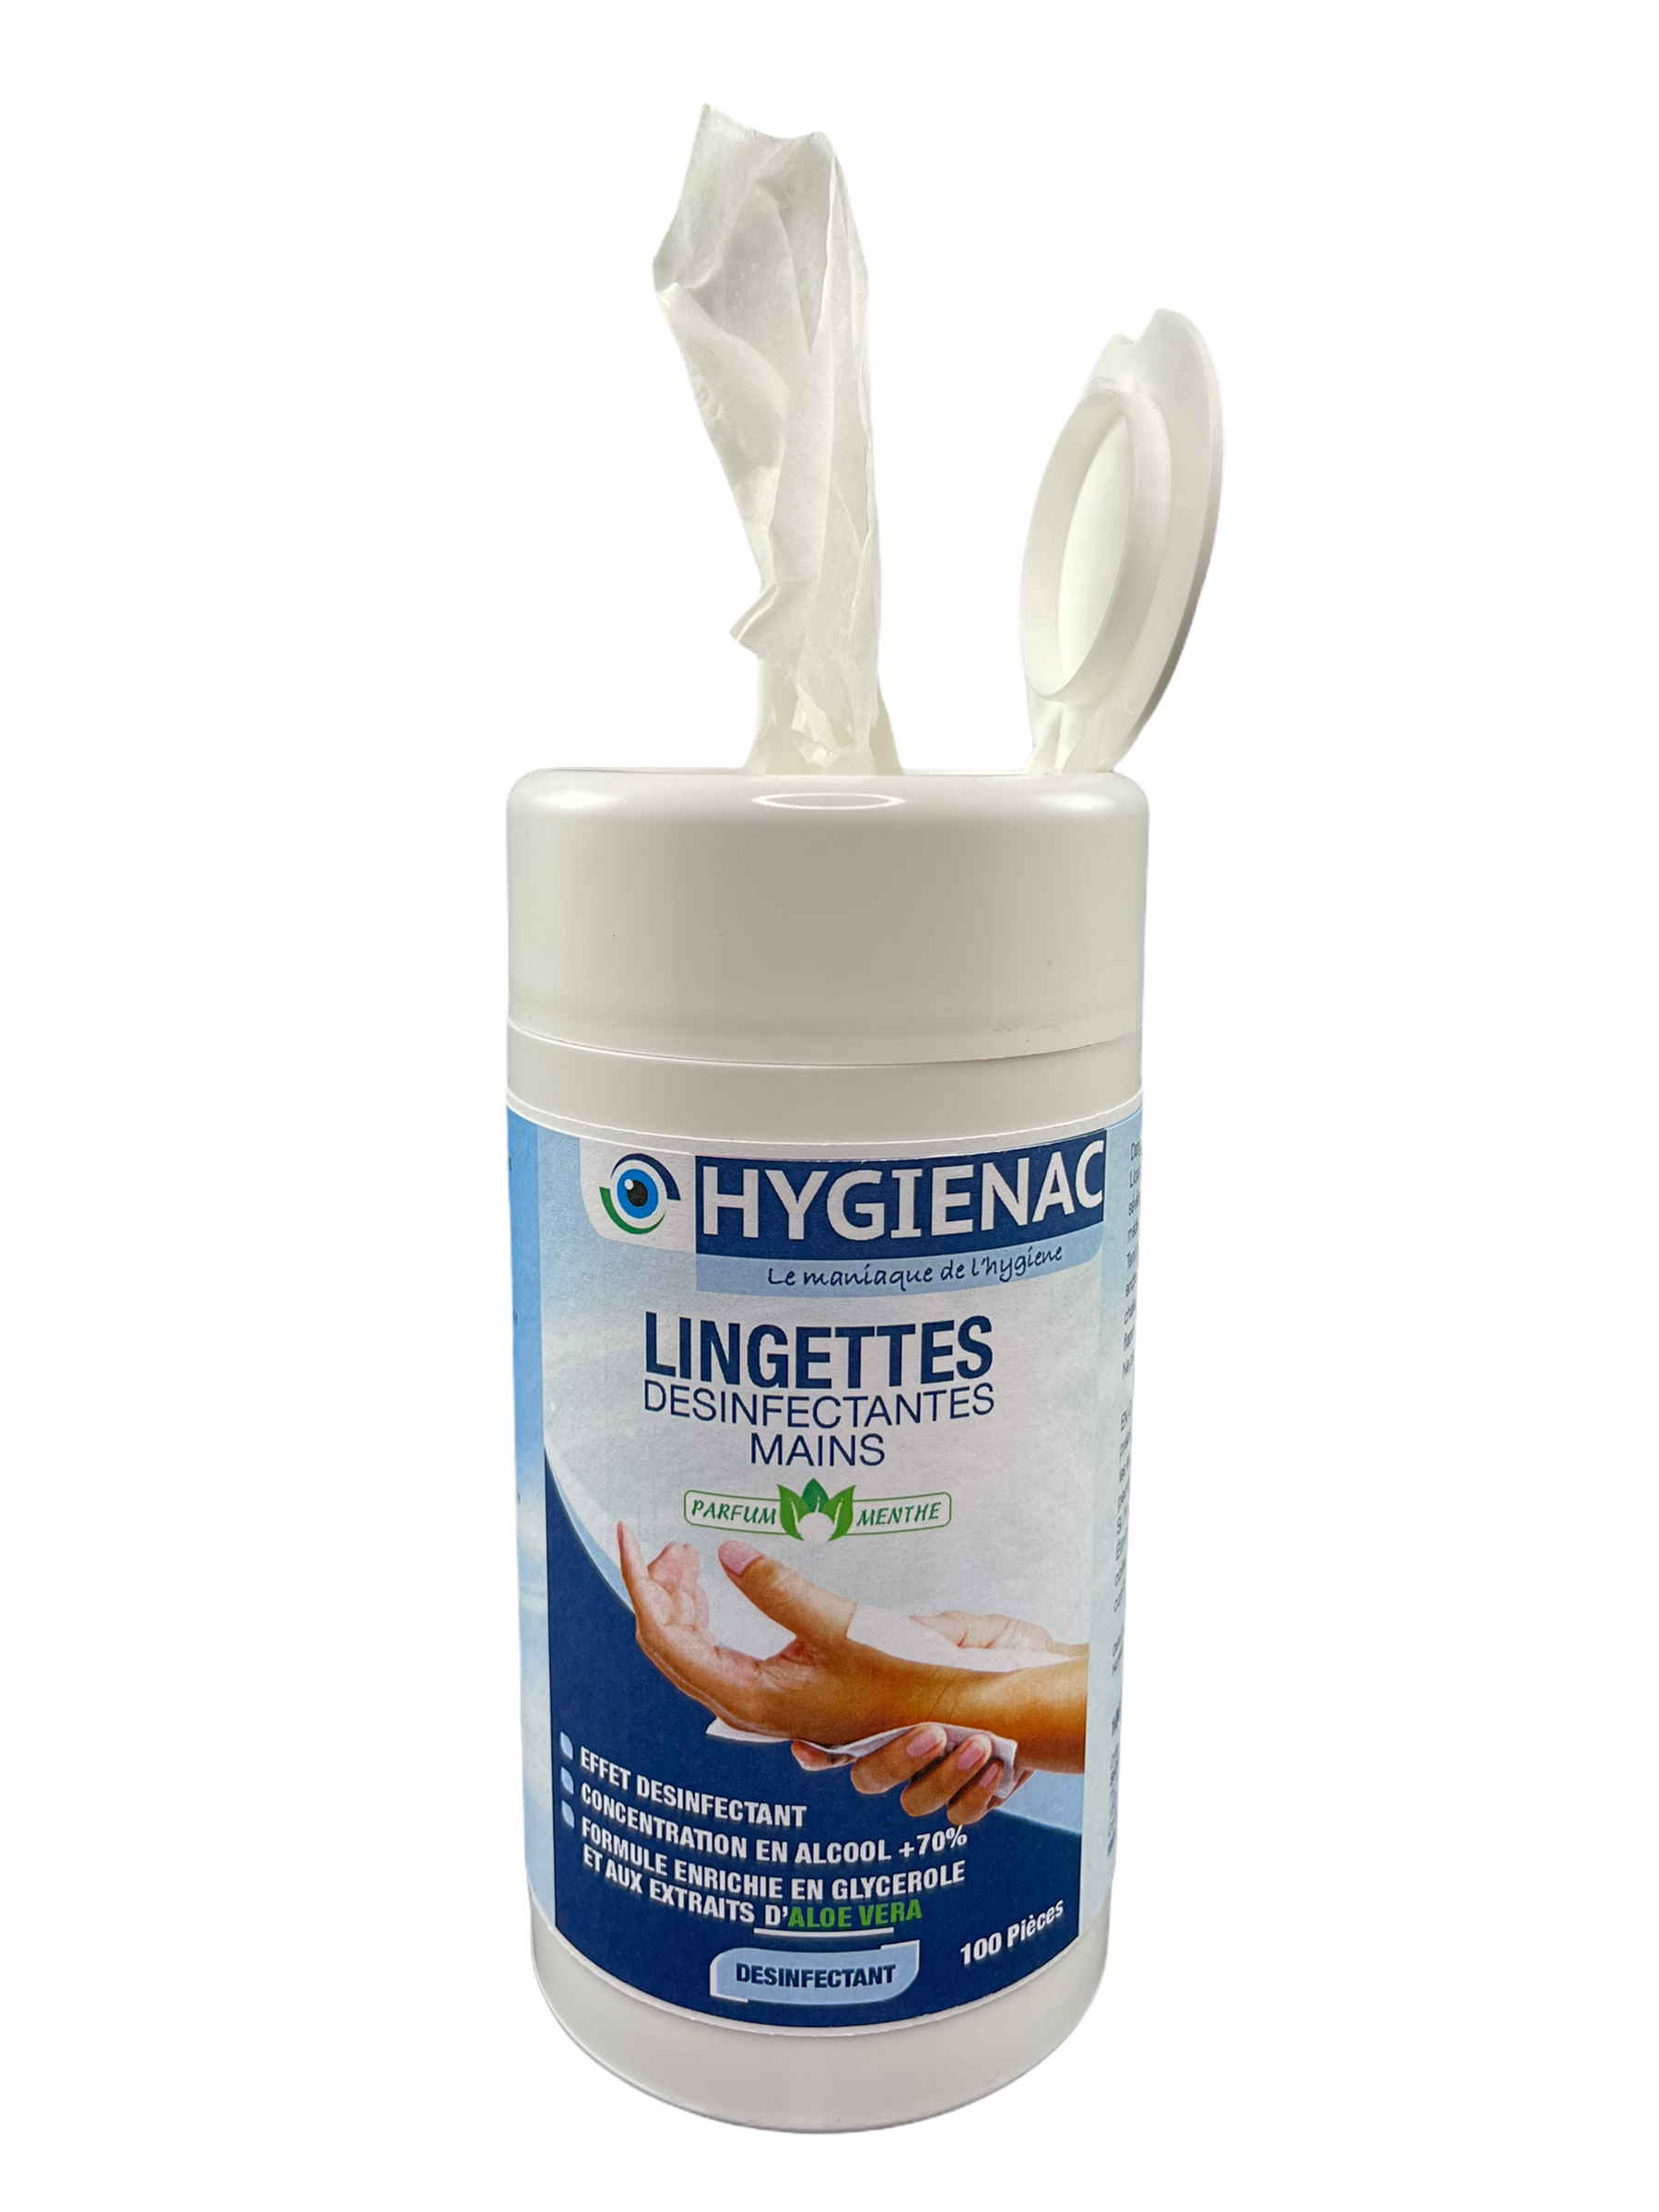 pt boite lingettes desinfectantes covis 100 pieces HYGIENAC